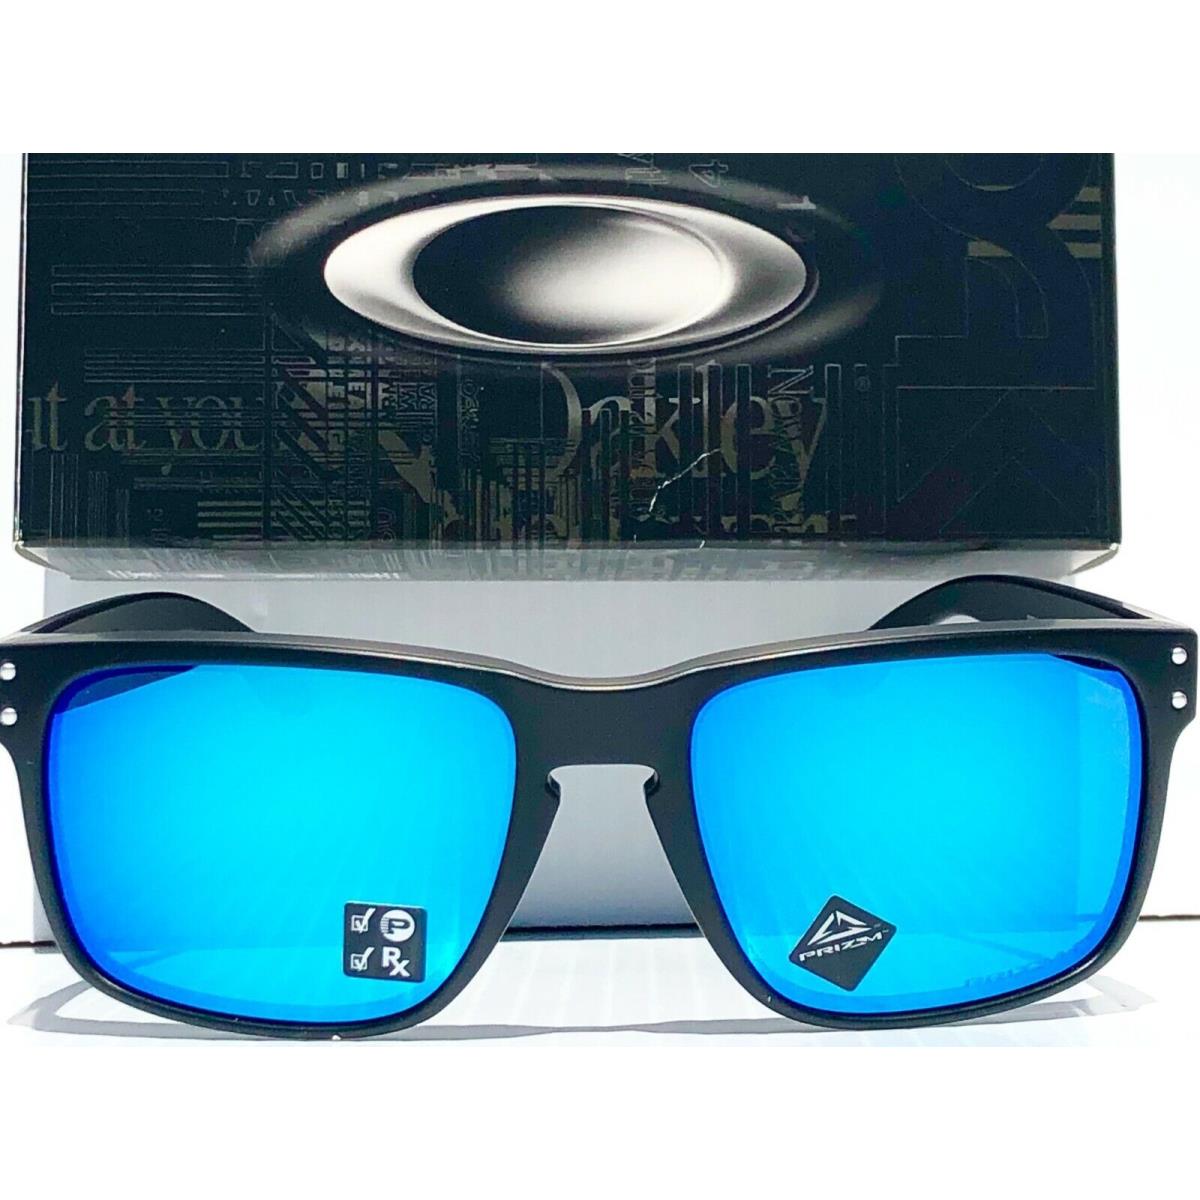 Oakley sunglasses Holbrook - Black Frame, Blue Lens 1